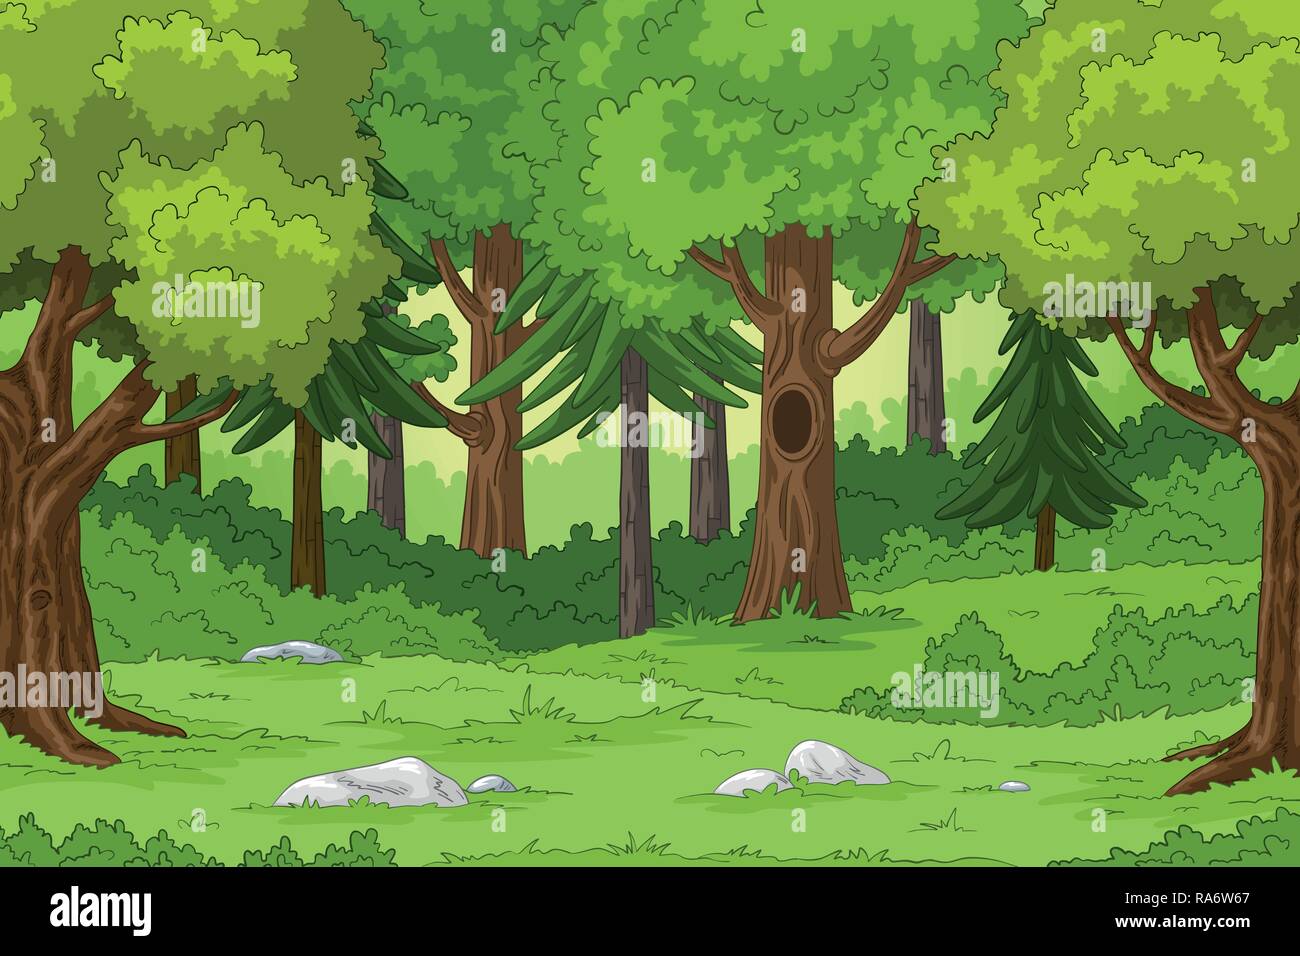 Wald Landschaft Mit Steinen Hand Zeichnen Abbildung Stock Vektorgrafik Alamy